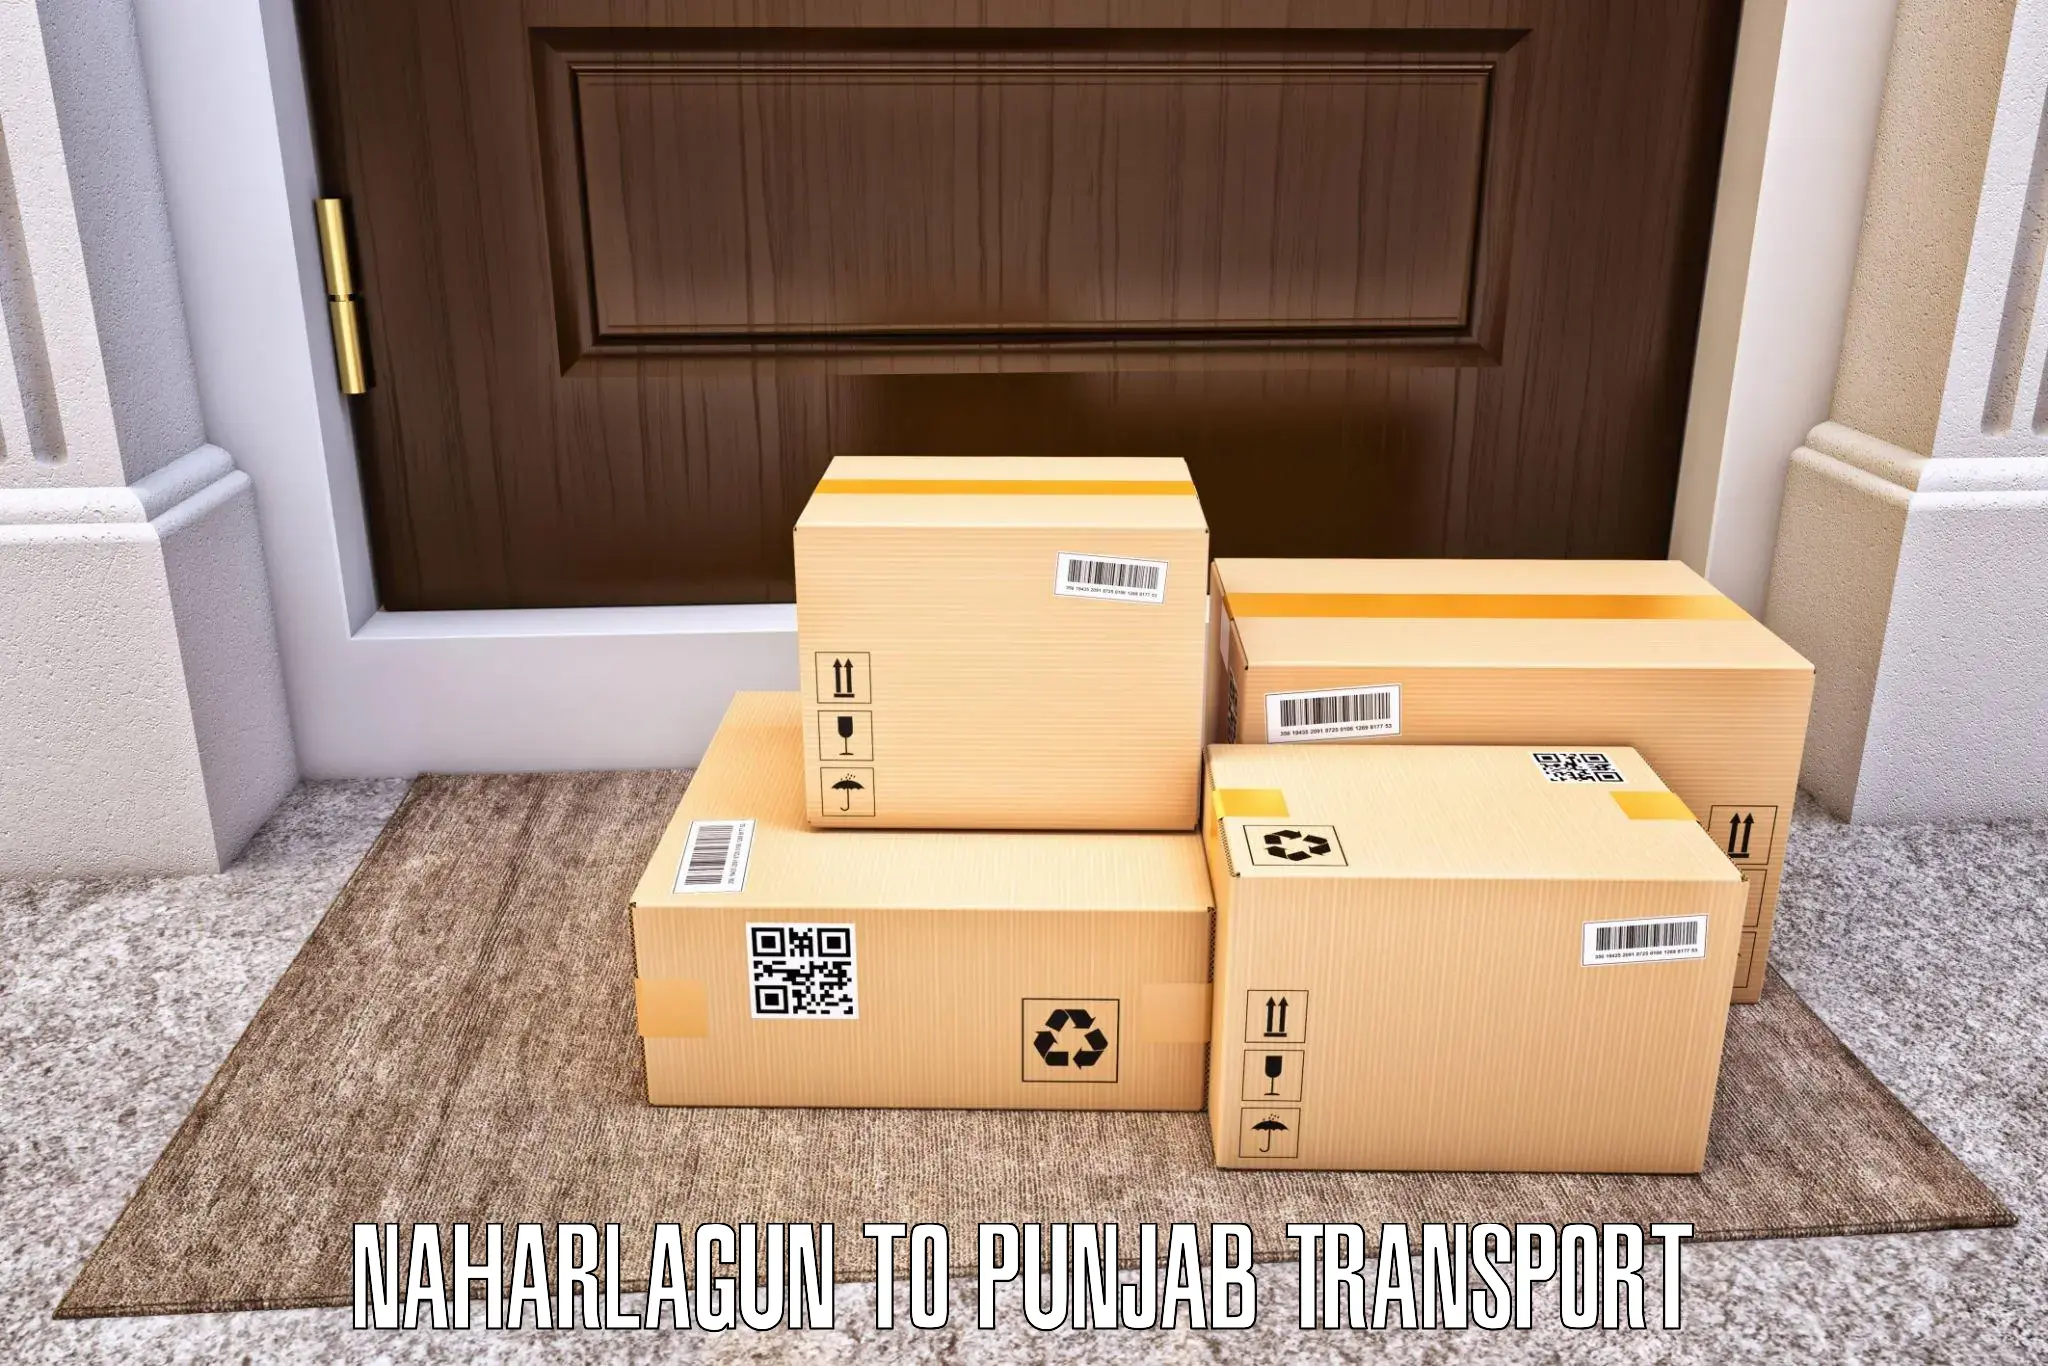 Two wheeler parcel service in Naharlagun to Punjab